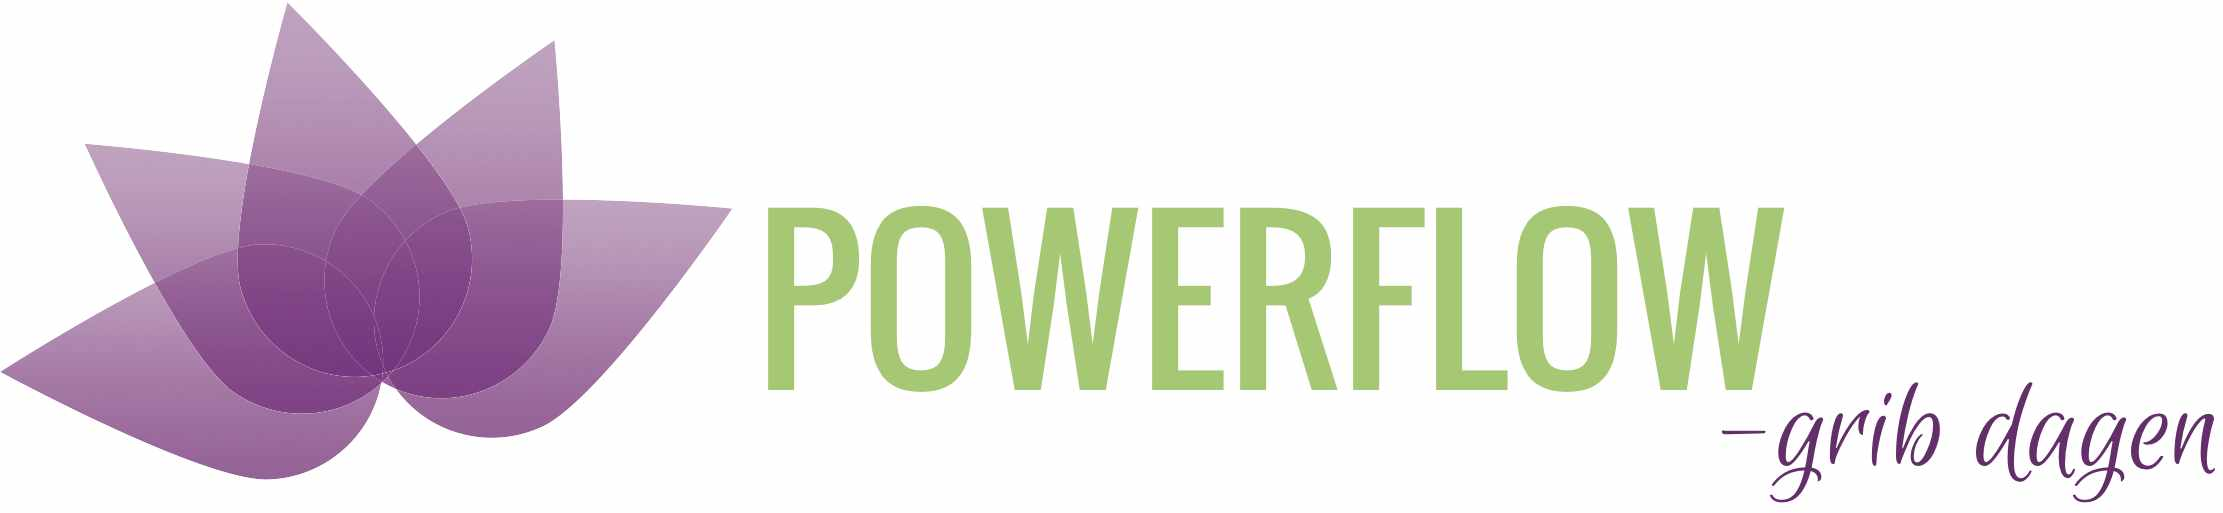 POWERFLOW SHOP logo